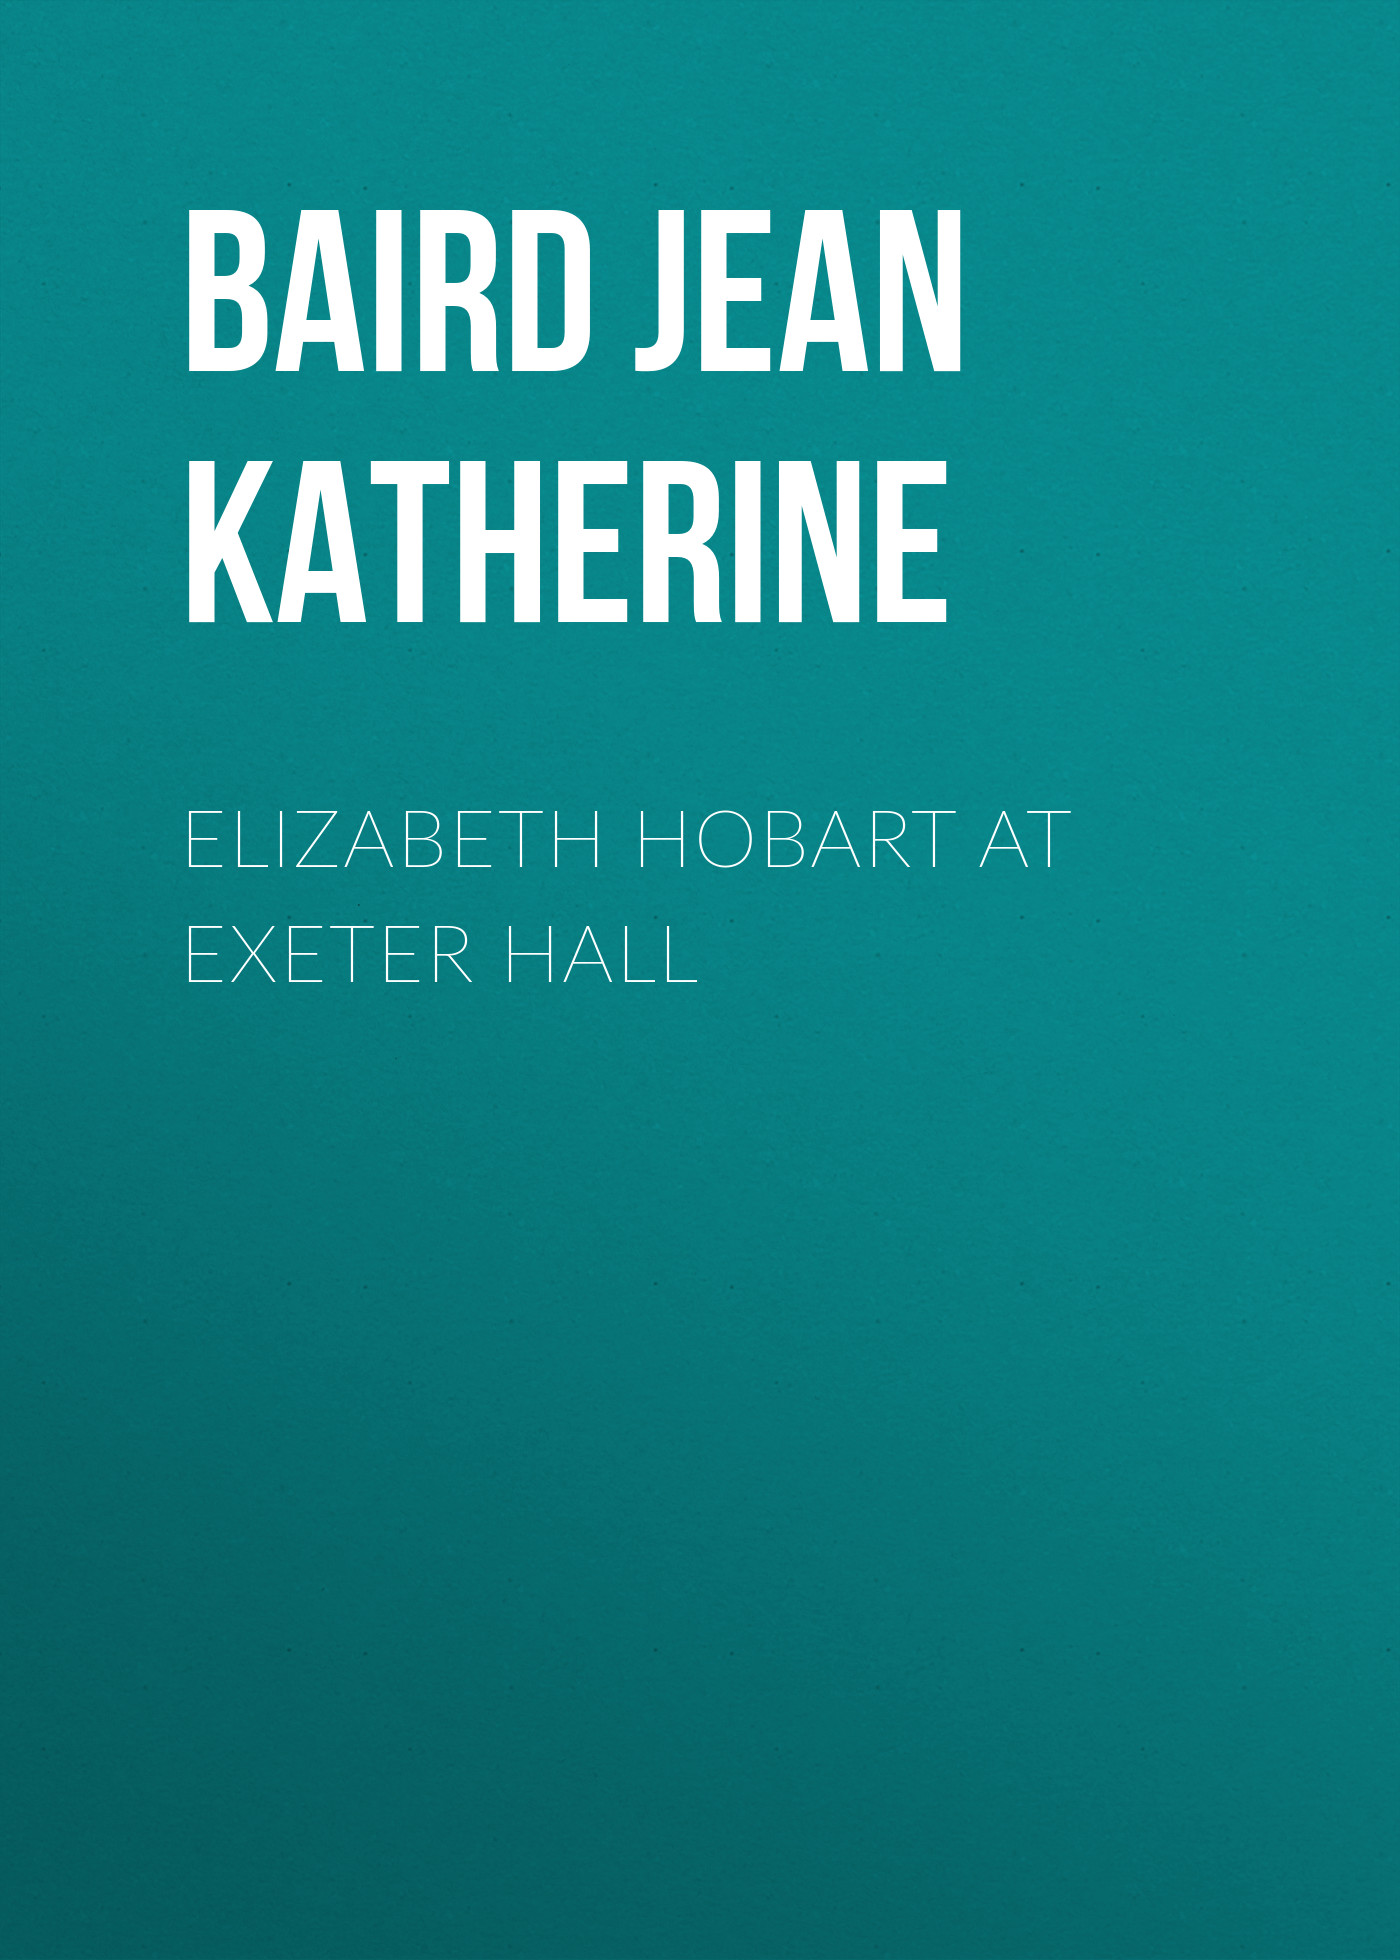 Книга Elizabeth Hobart at Exeter Hall из серии , созданная Jean Baird, может относится к жанру Зарубежная старинная литература, Зарубежная классика. Стоимость электронной книги Elizabeth Hobart at Exeter Hall с идентификатором 24167532 составляет 0.90 руб.